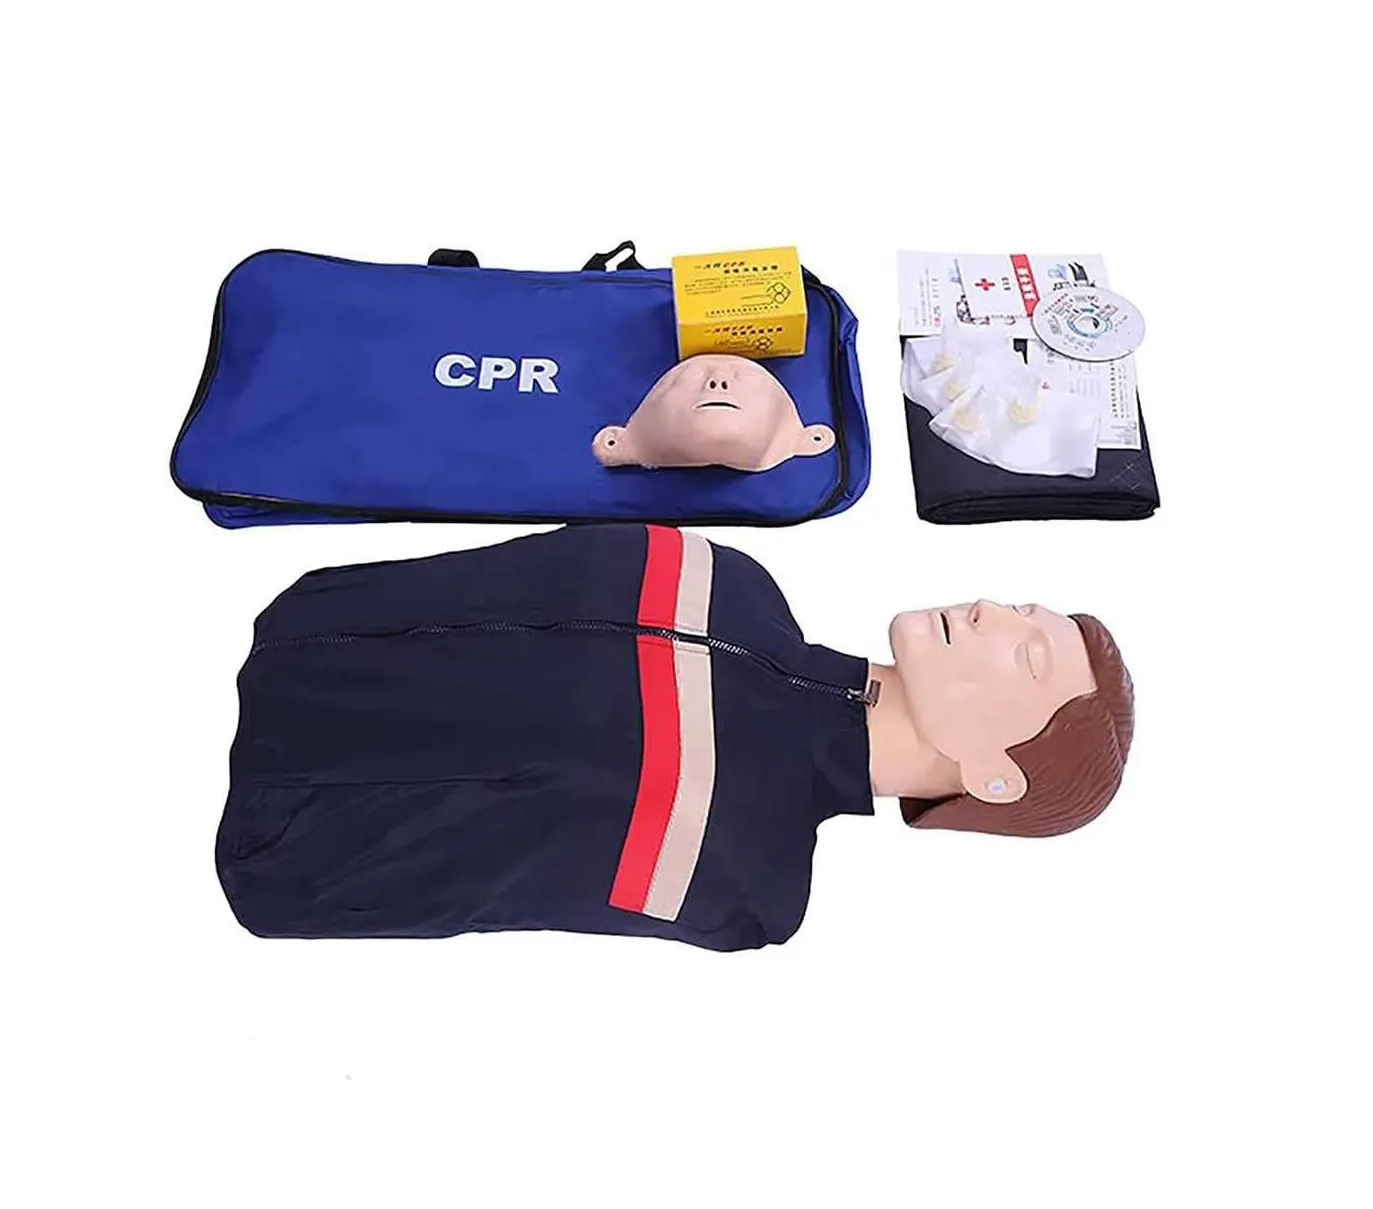 Logotipo personalizado CPR treinamento Enfermagem cpr manequim treinamento de primeiros socorros Metade Do Corpo CPR Manequim Simulador De Treinamento De Emergência adulto Manequim